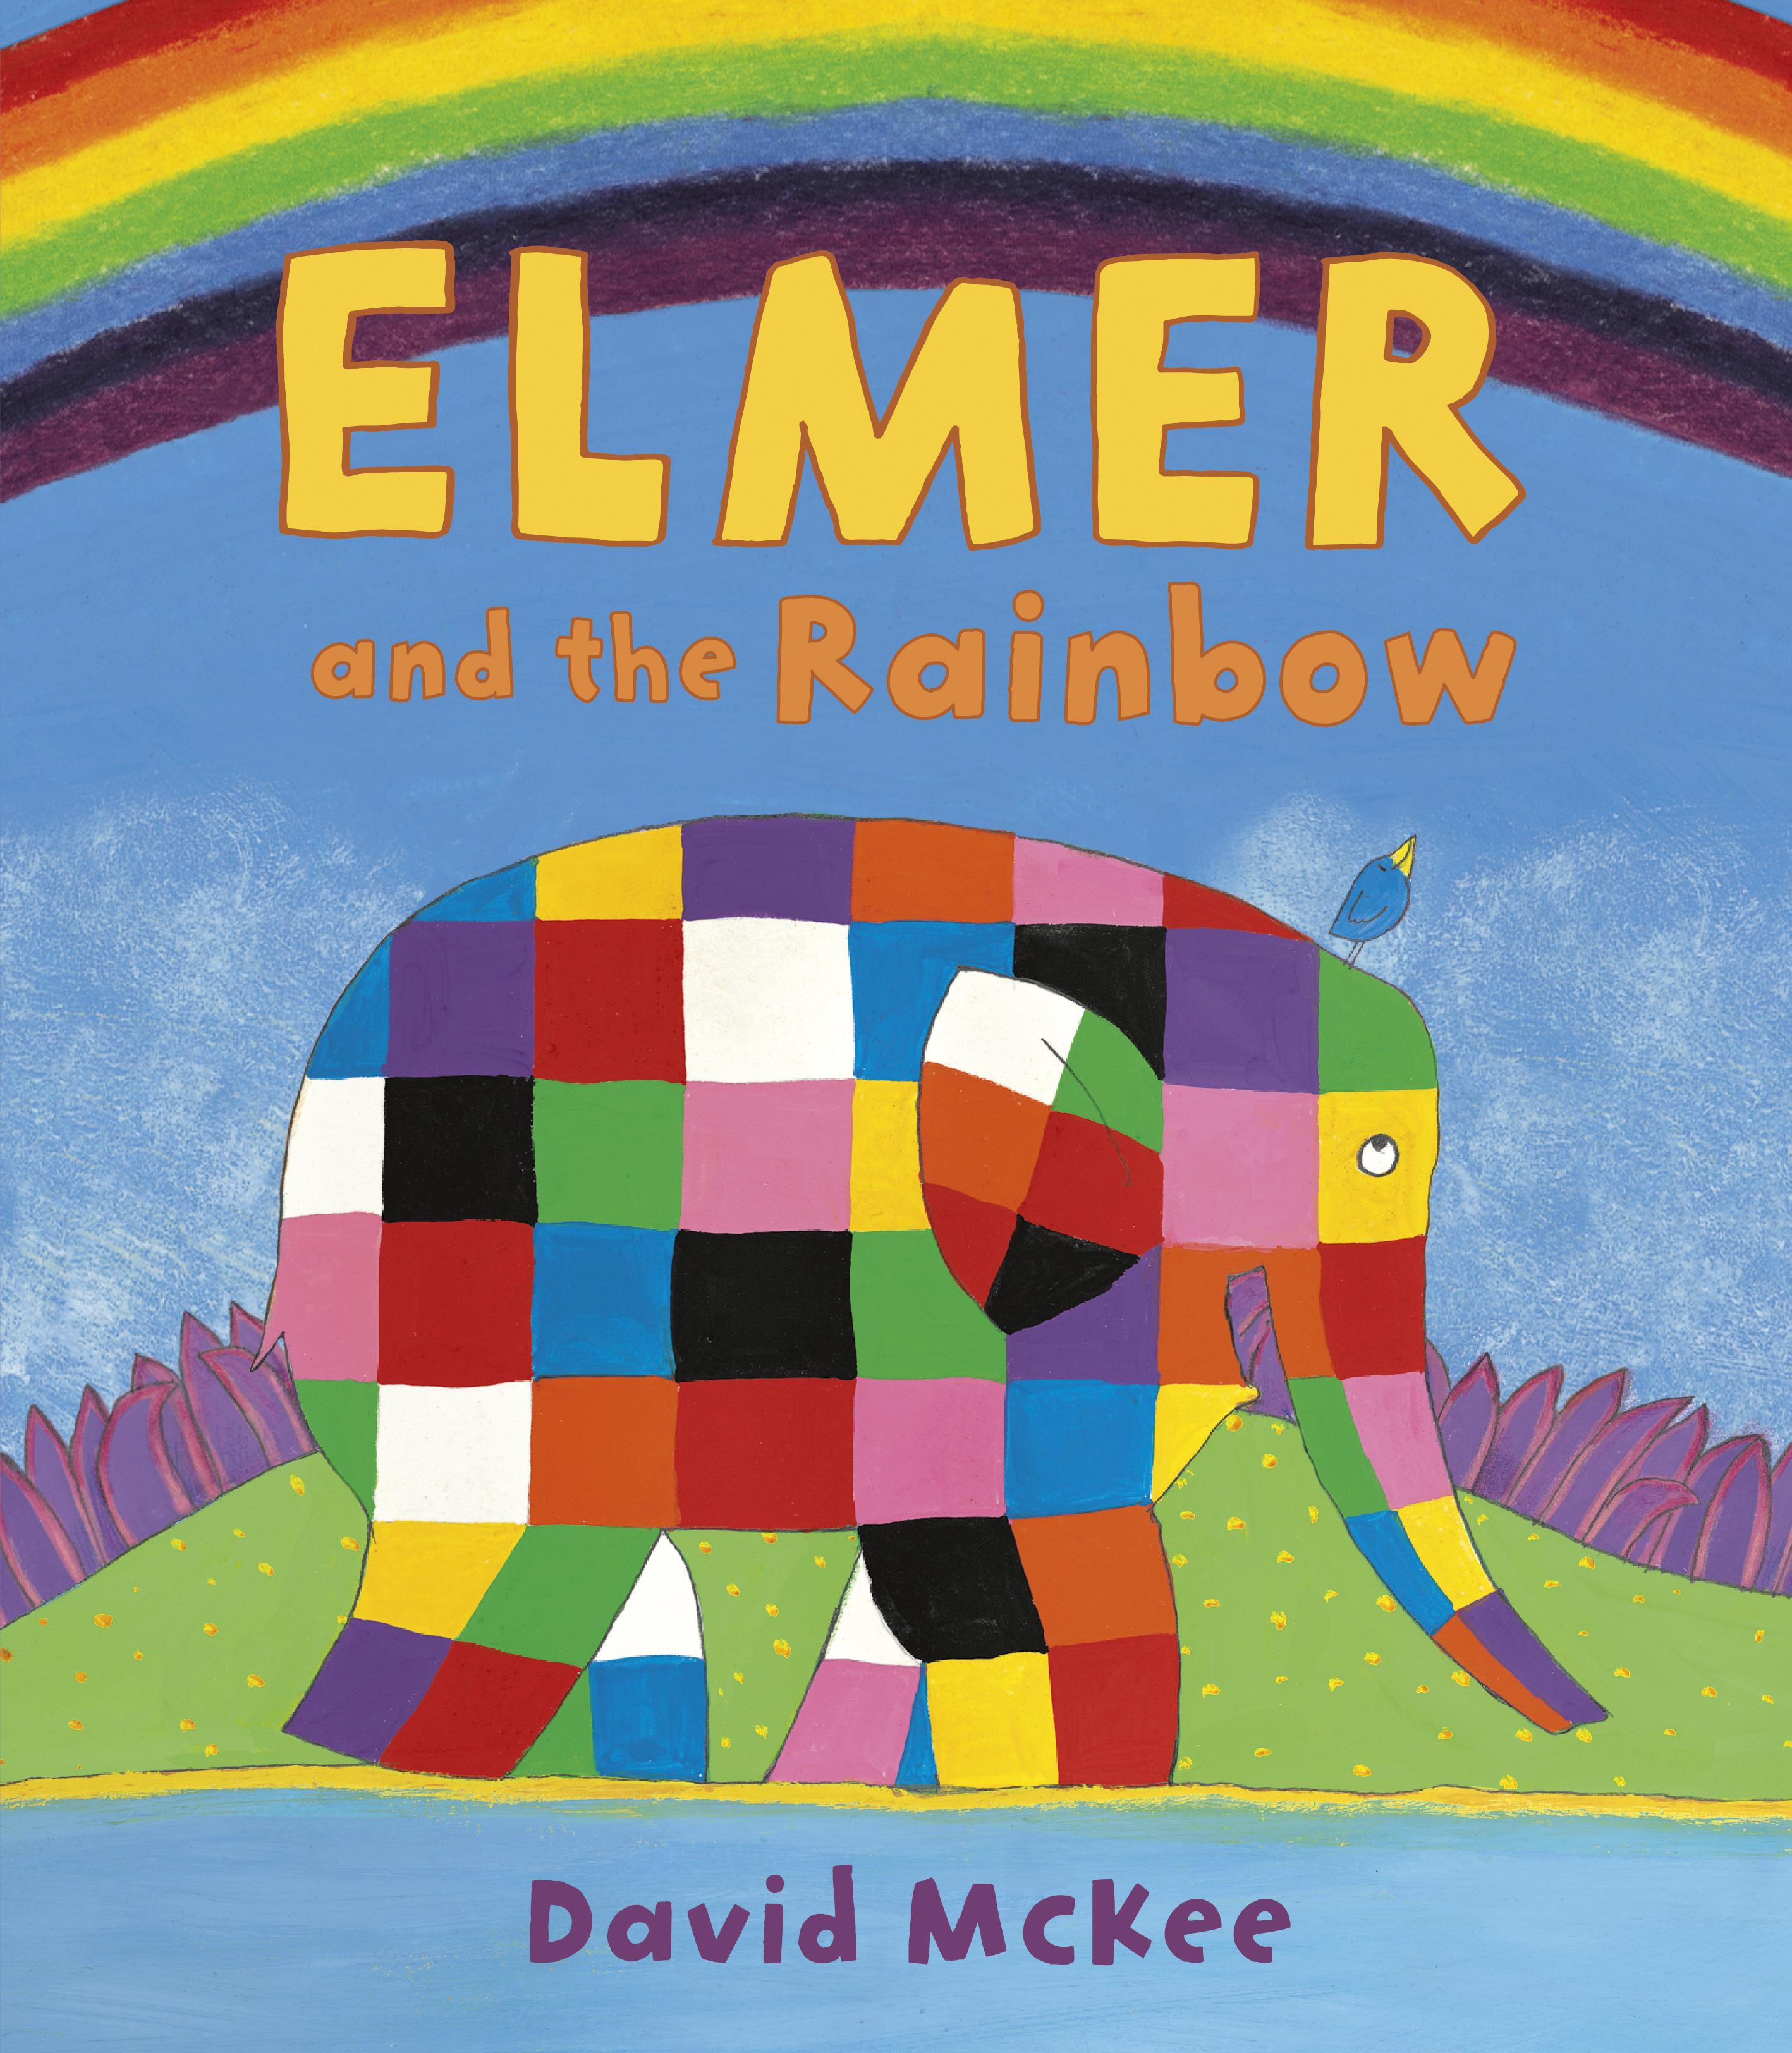 Elmer and the Rainbow / David McKee / Taschenbuch / Kartoniert / Broschiert / Englisch / 2009 / Andersen Press / EAN 9781842707166 - McKee, David